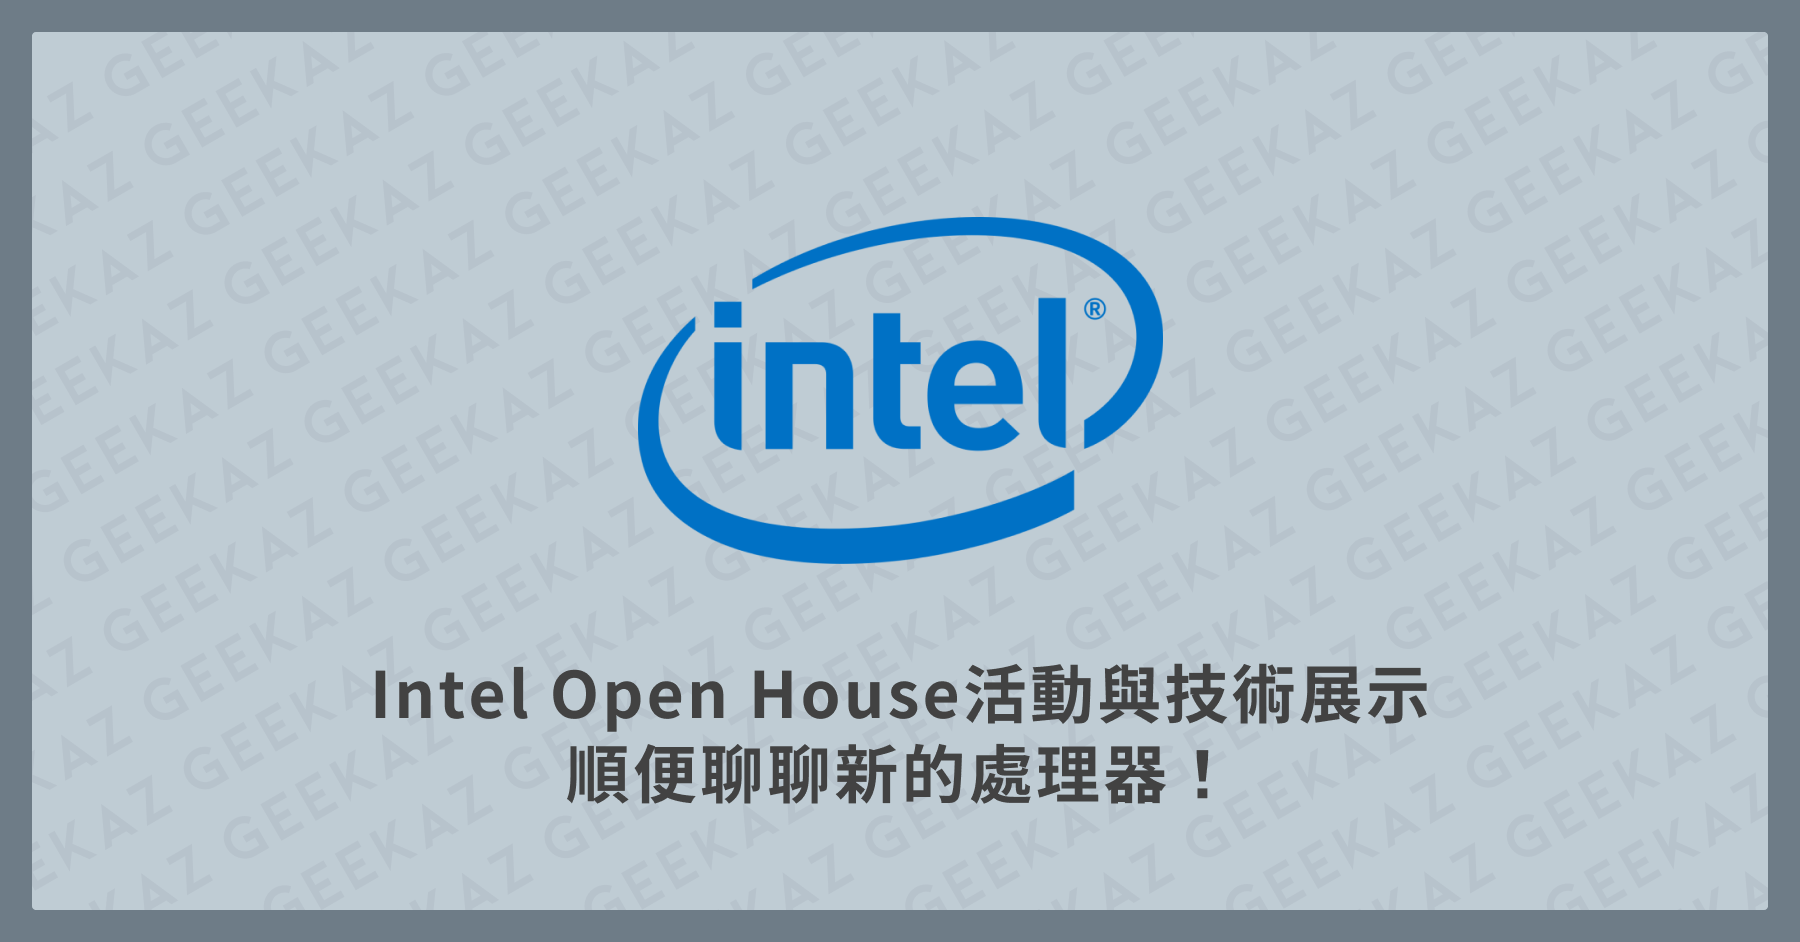 Intel Open House 活動